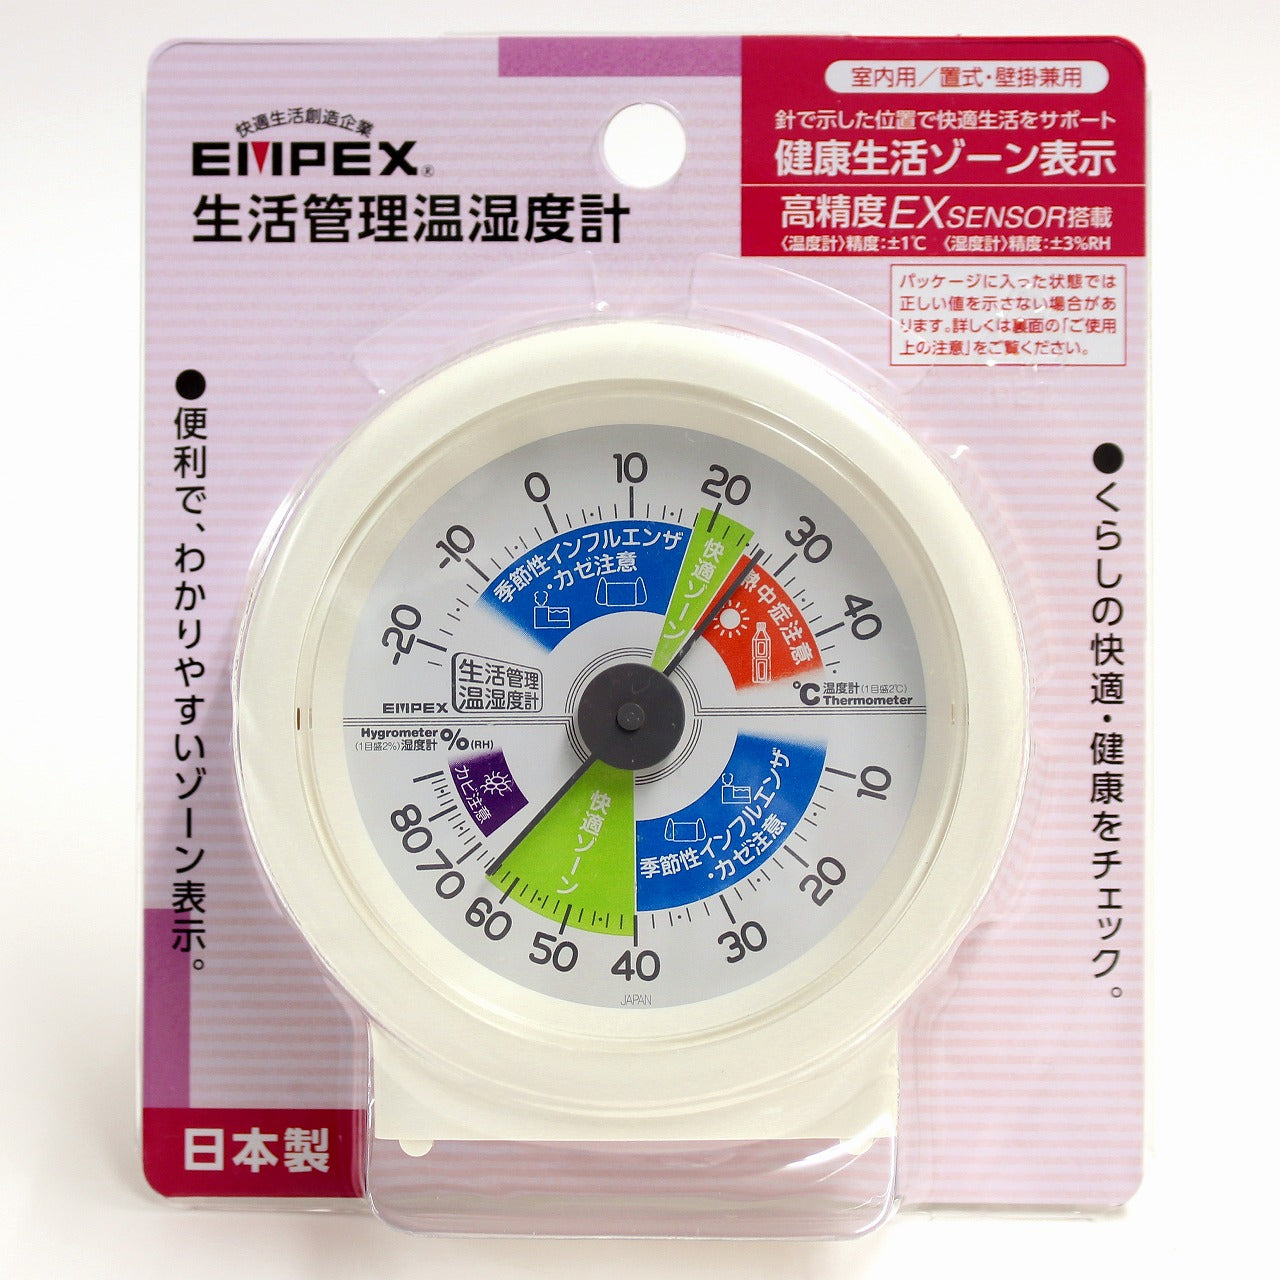 生活管理温湿度計 TM-2870 – EMPEX / エンペックス気象計 オンライン 